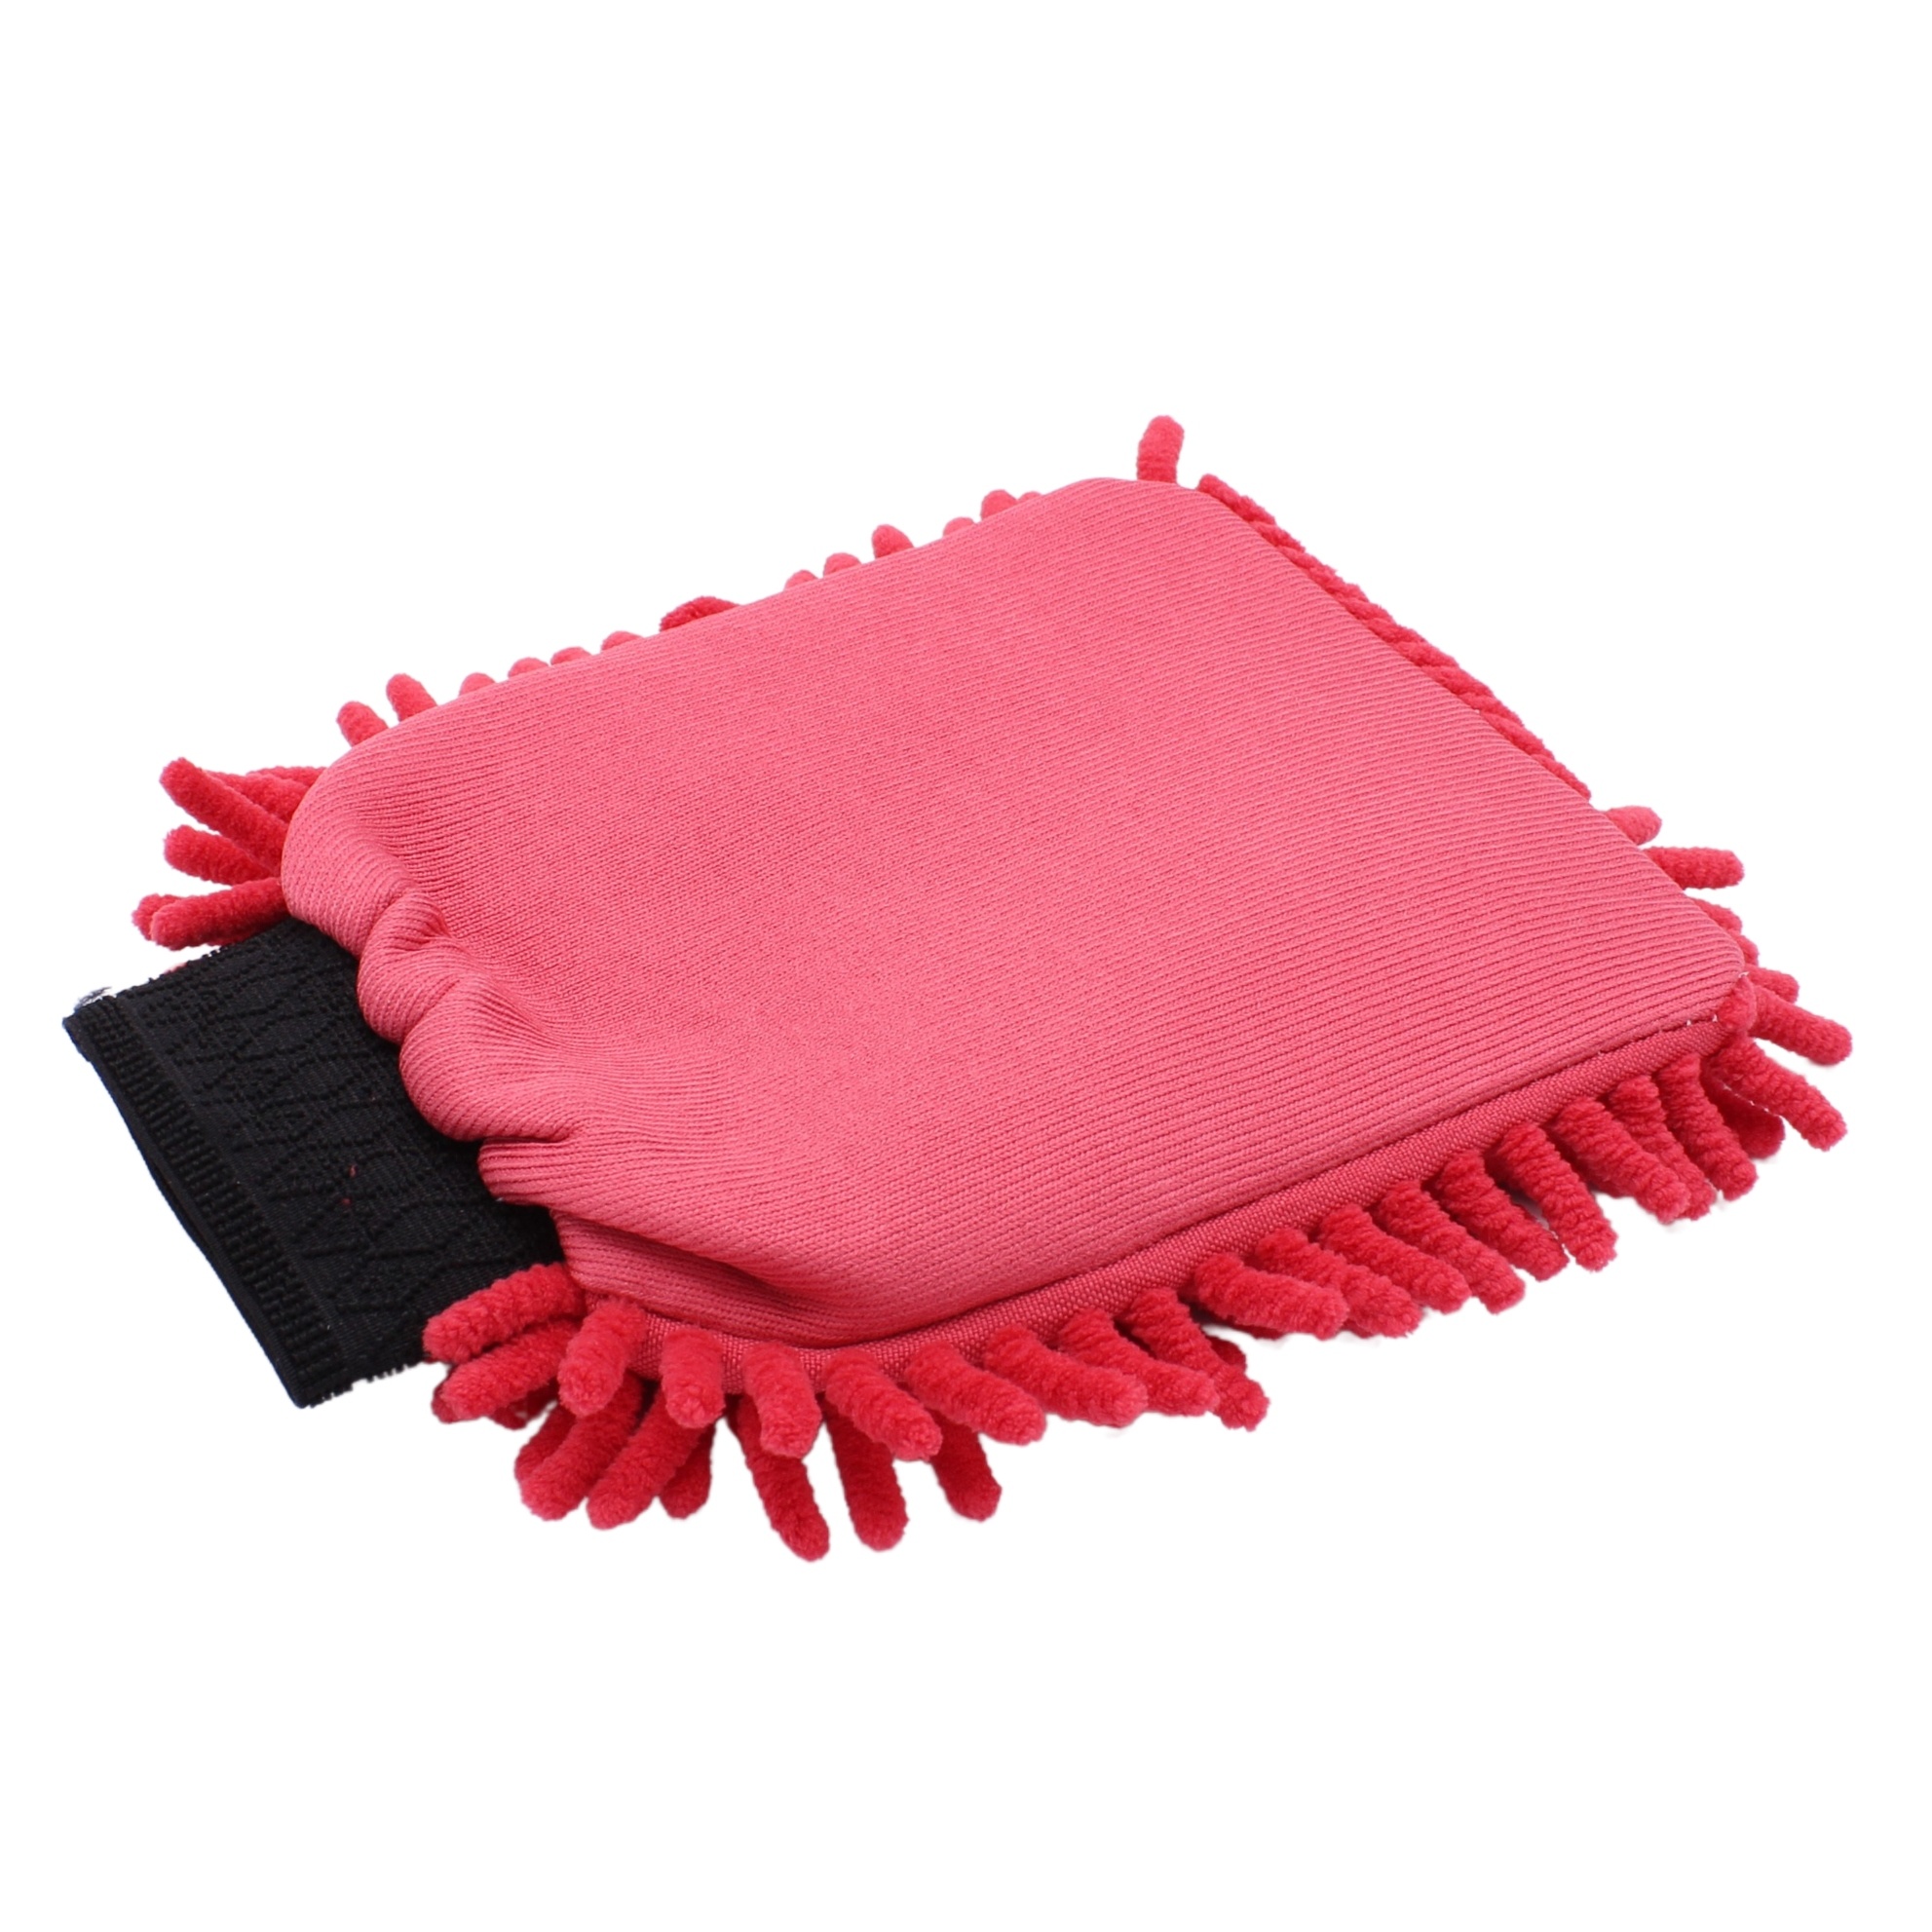 Gant de lavage en microfibre Cleandetail - Gant de lavage rouge